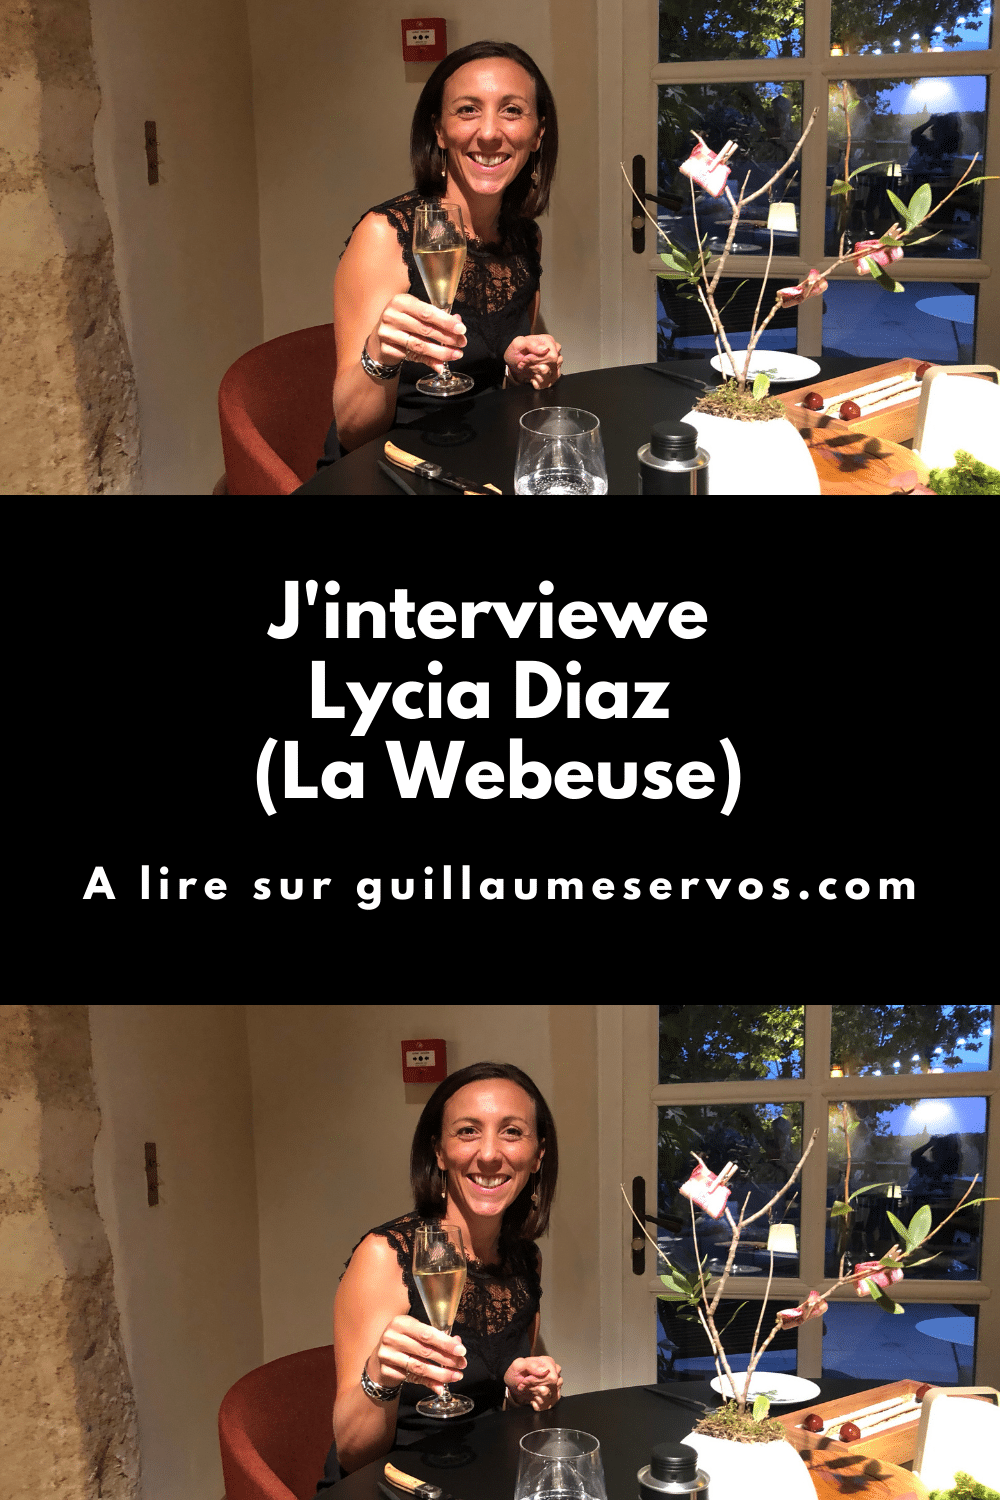 Découvre mon interview avec Lycia Diaz du blog La Webeuse. Au menu : son rapport au freelancing, au blogging, aux réseaux sociaux et au voyage.